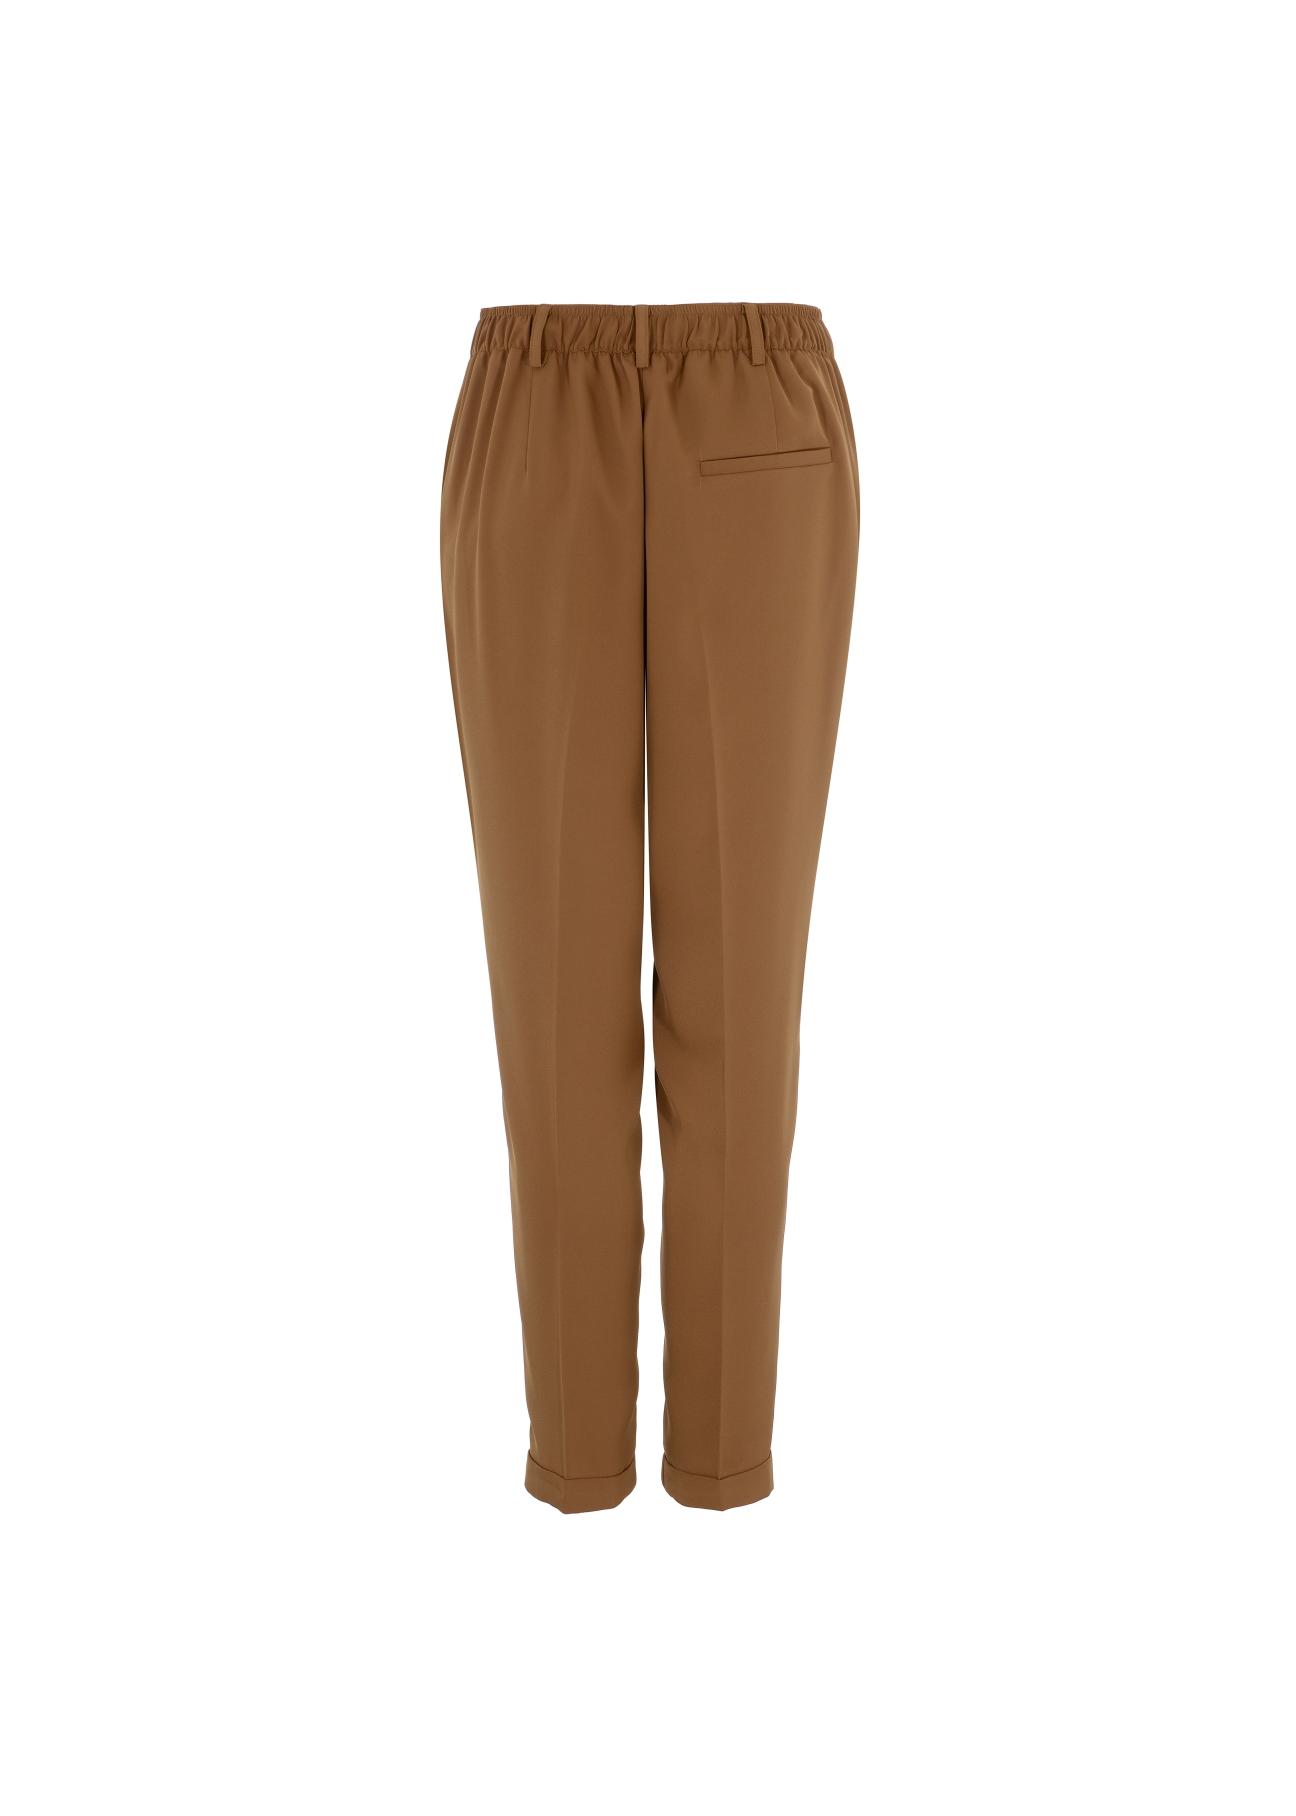 Eleganckie karmelowe spodnie damskie SPODT-0062-89(Z21)